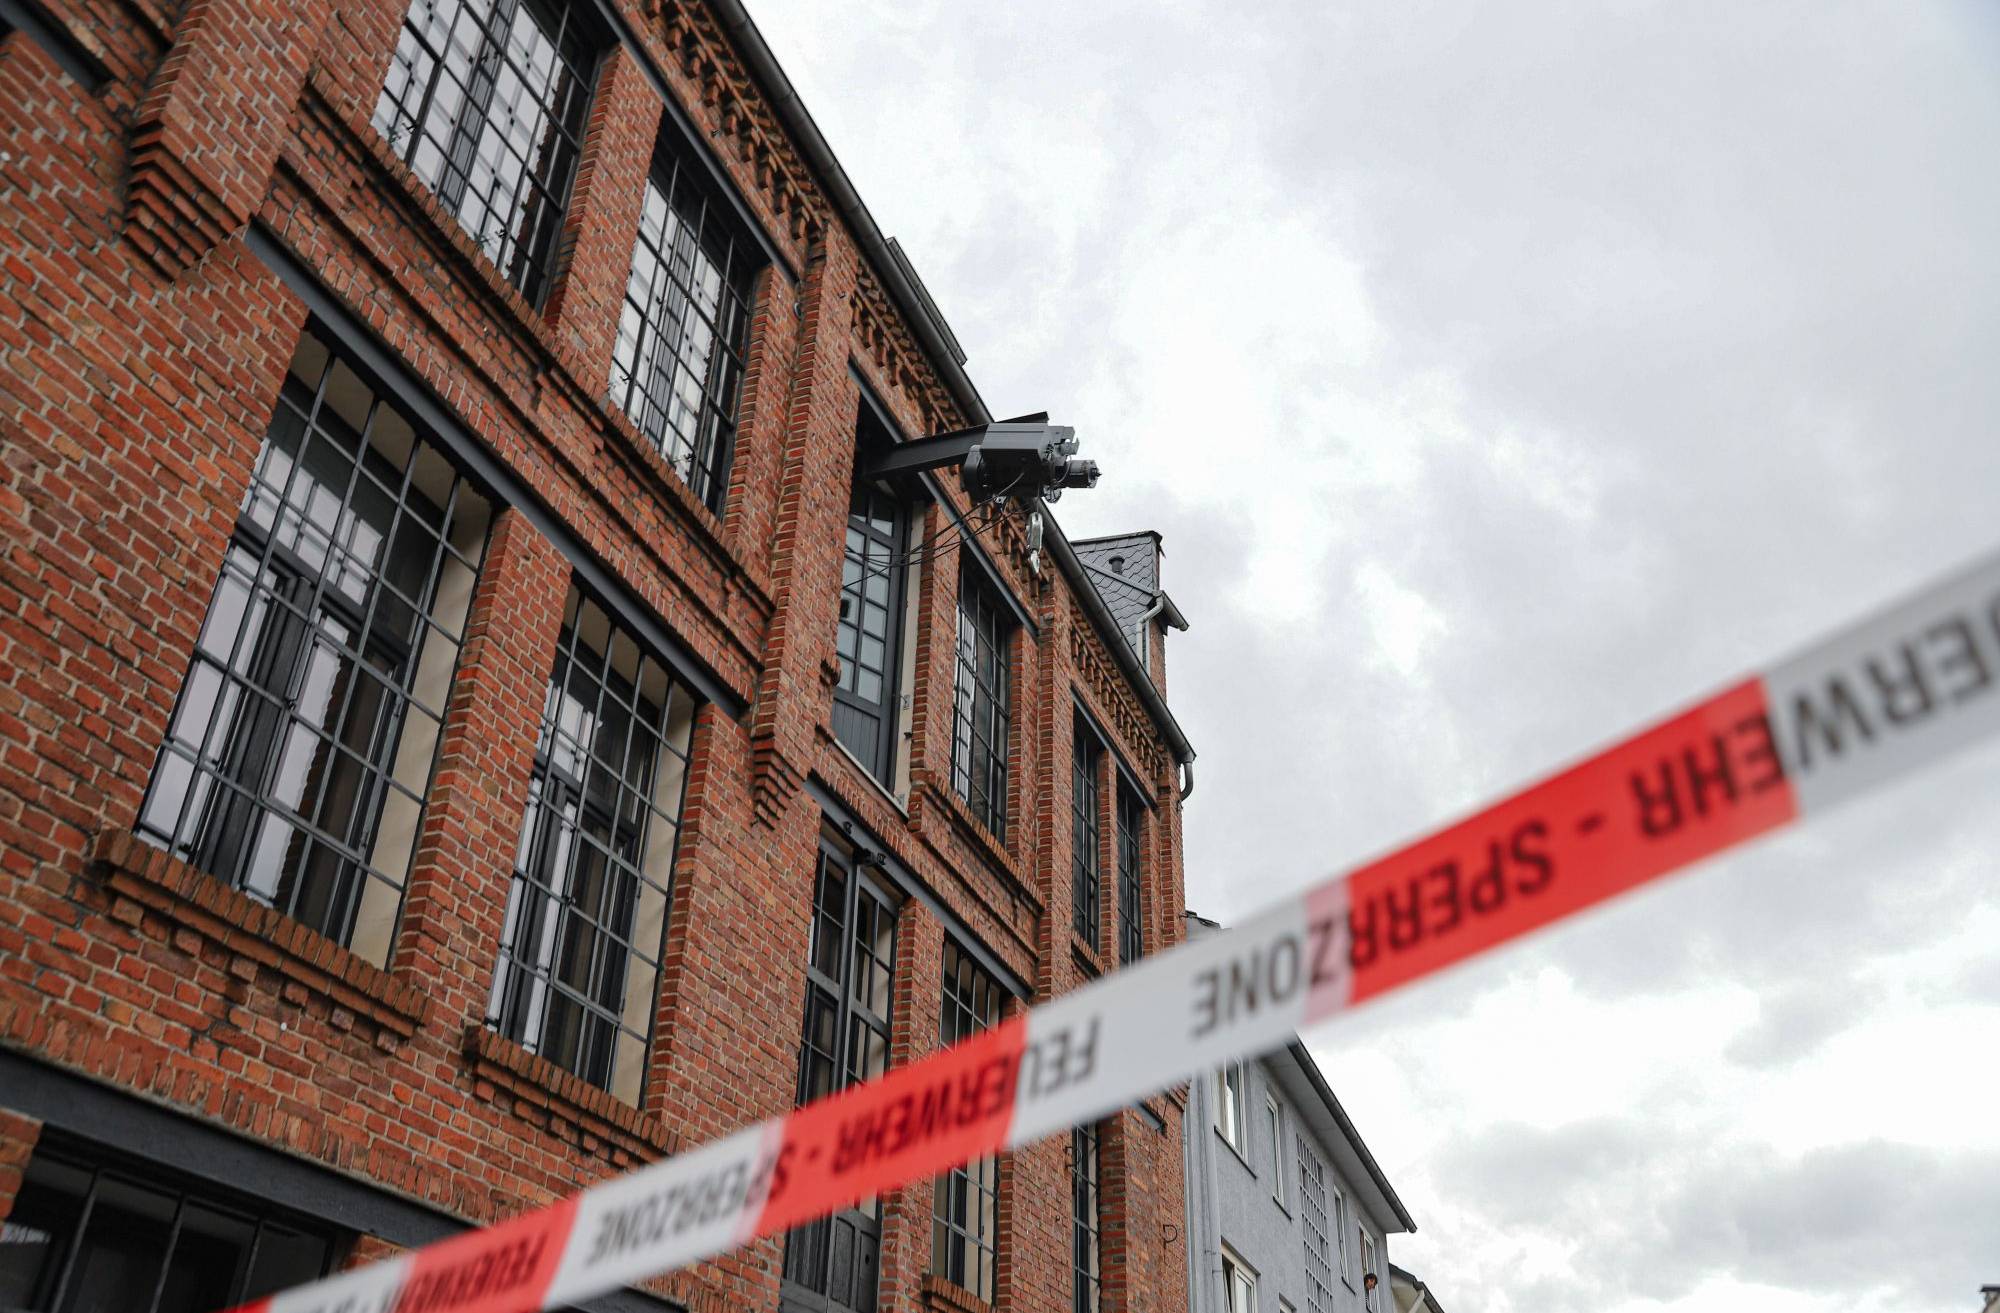 Defekter Ladekran verursacht in Wuppertal Feuerwehr-Einsatz​